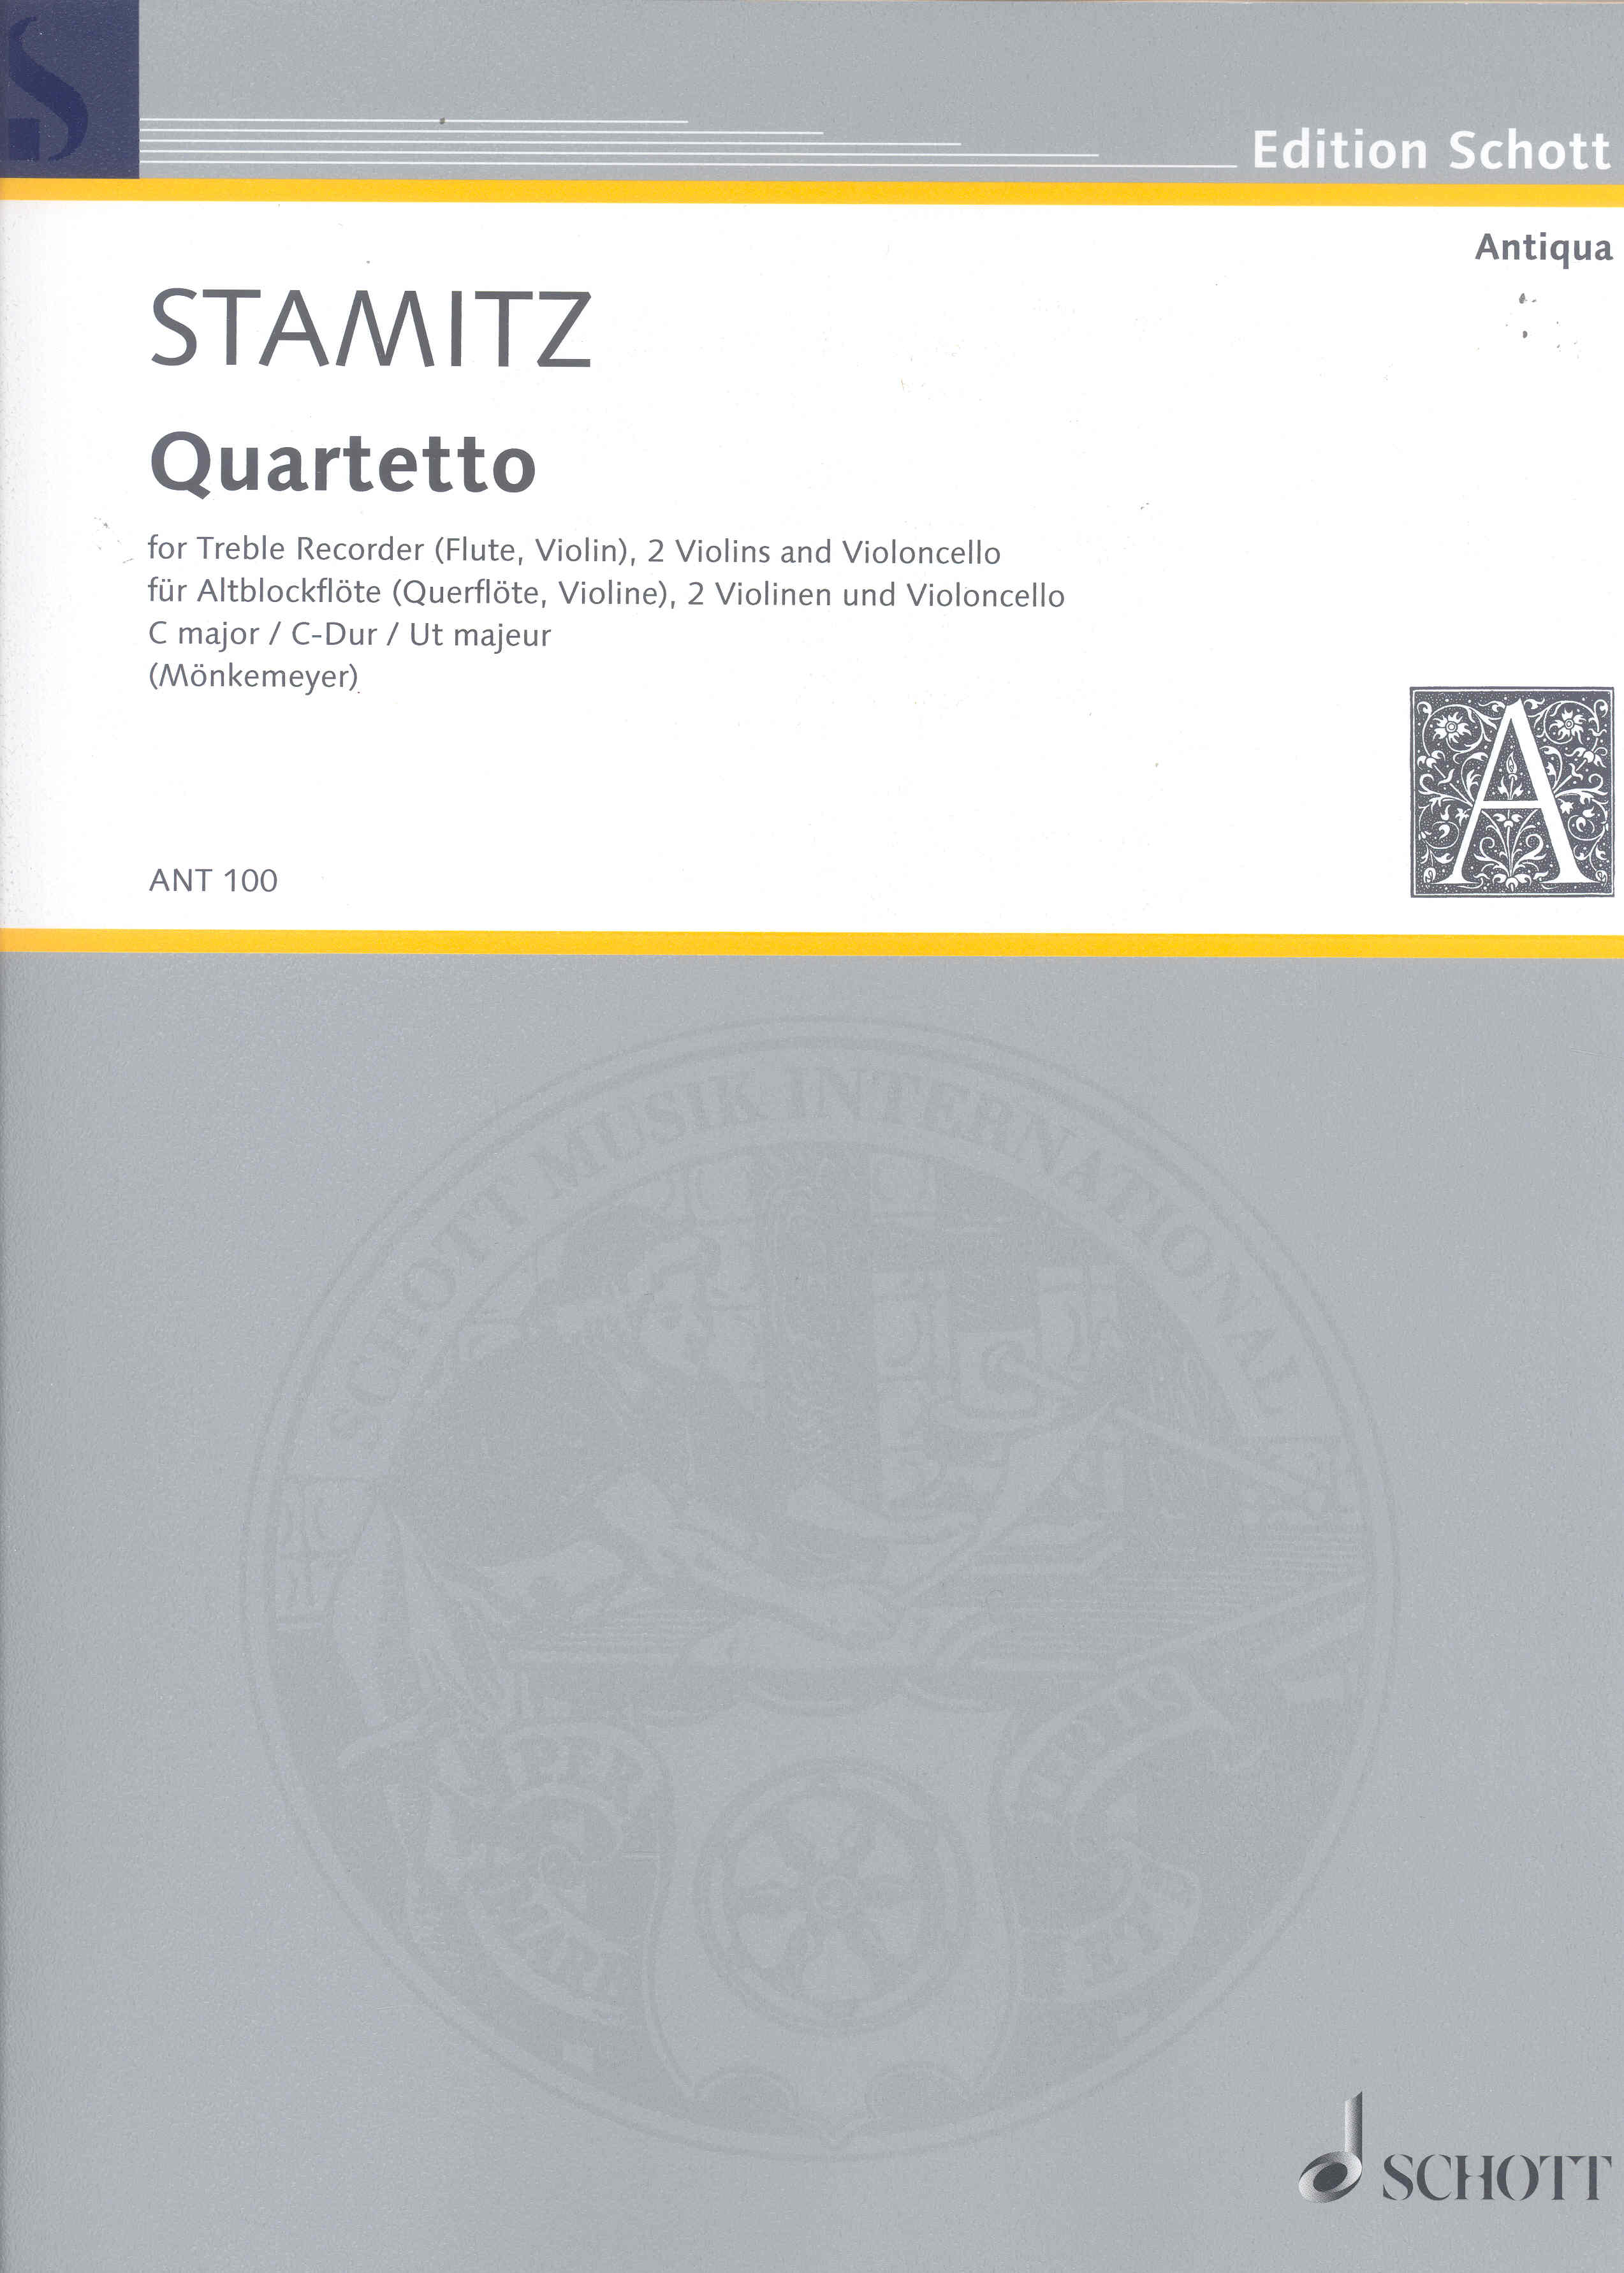 Stamitz Quartet In C Major Score & Parts Sheet Music Songbook